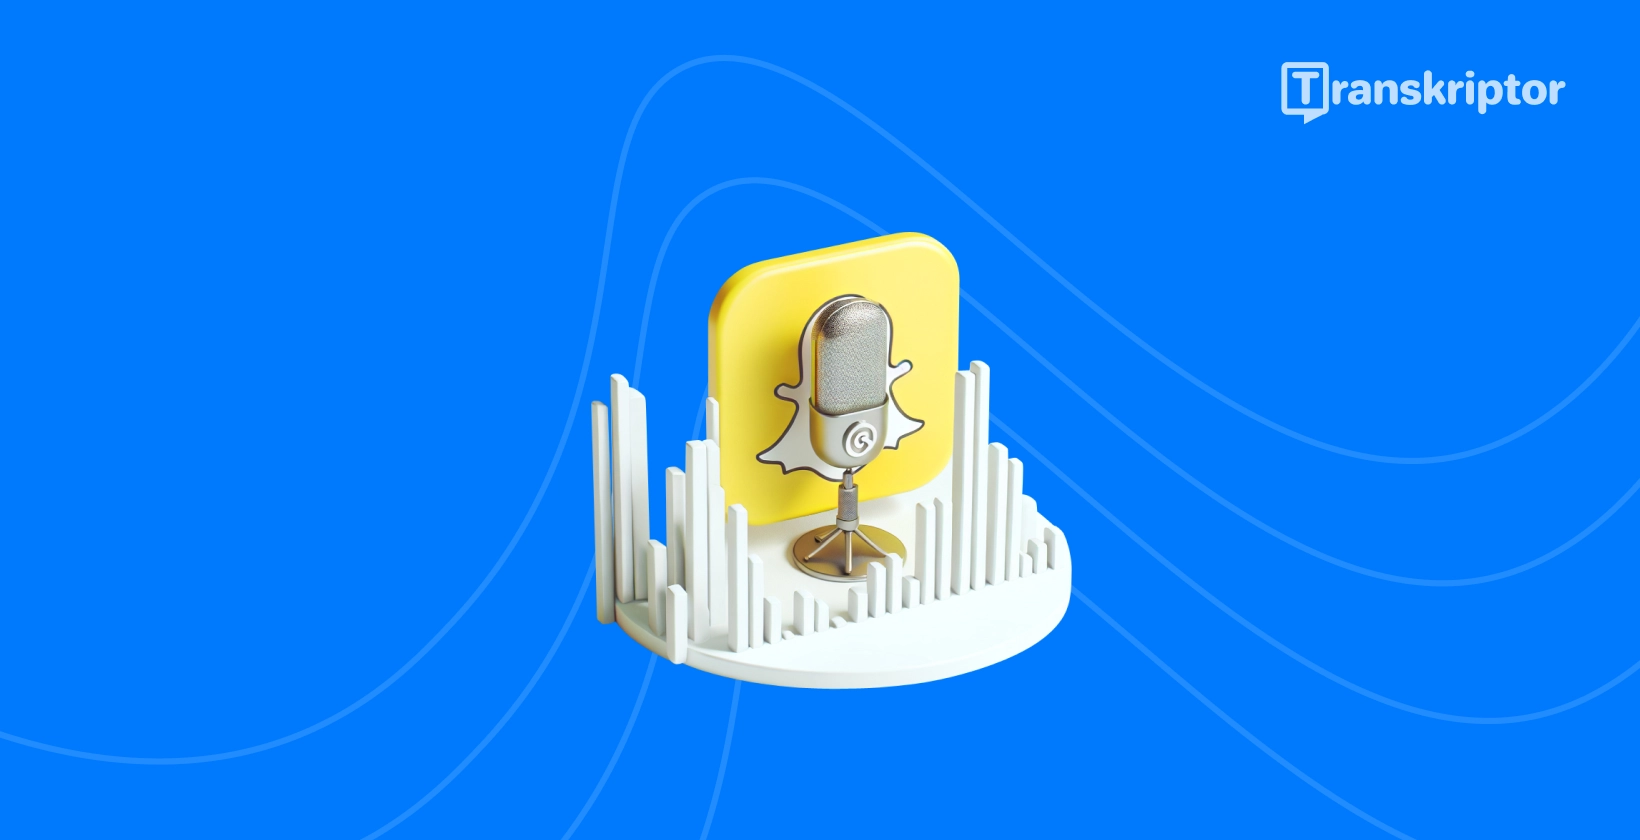 Snapchat ikona duha in mikrofona, ki simbolizira vodnik za prepis zvoka Transkriptor.